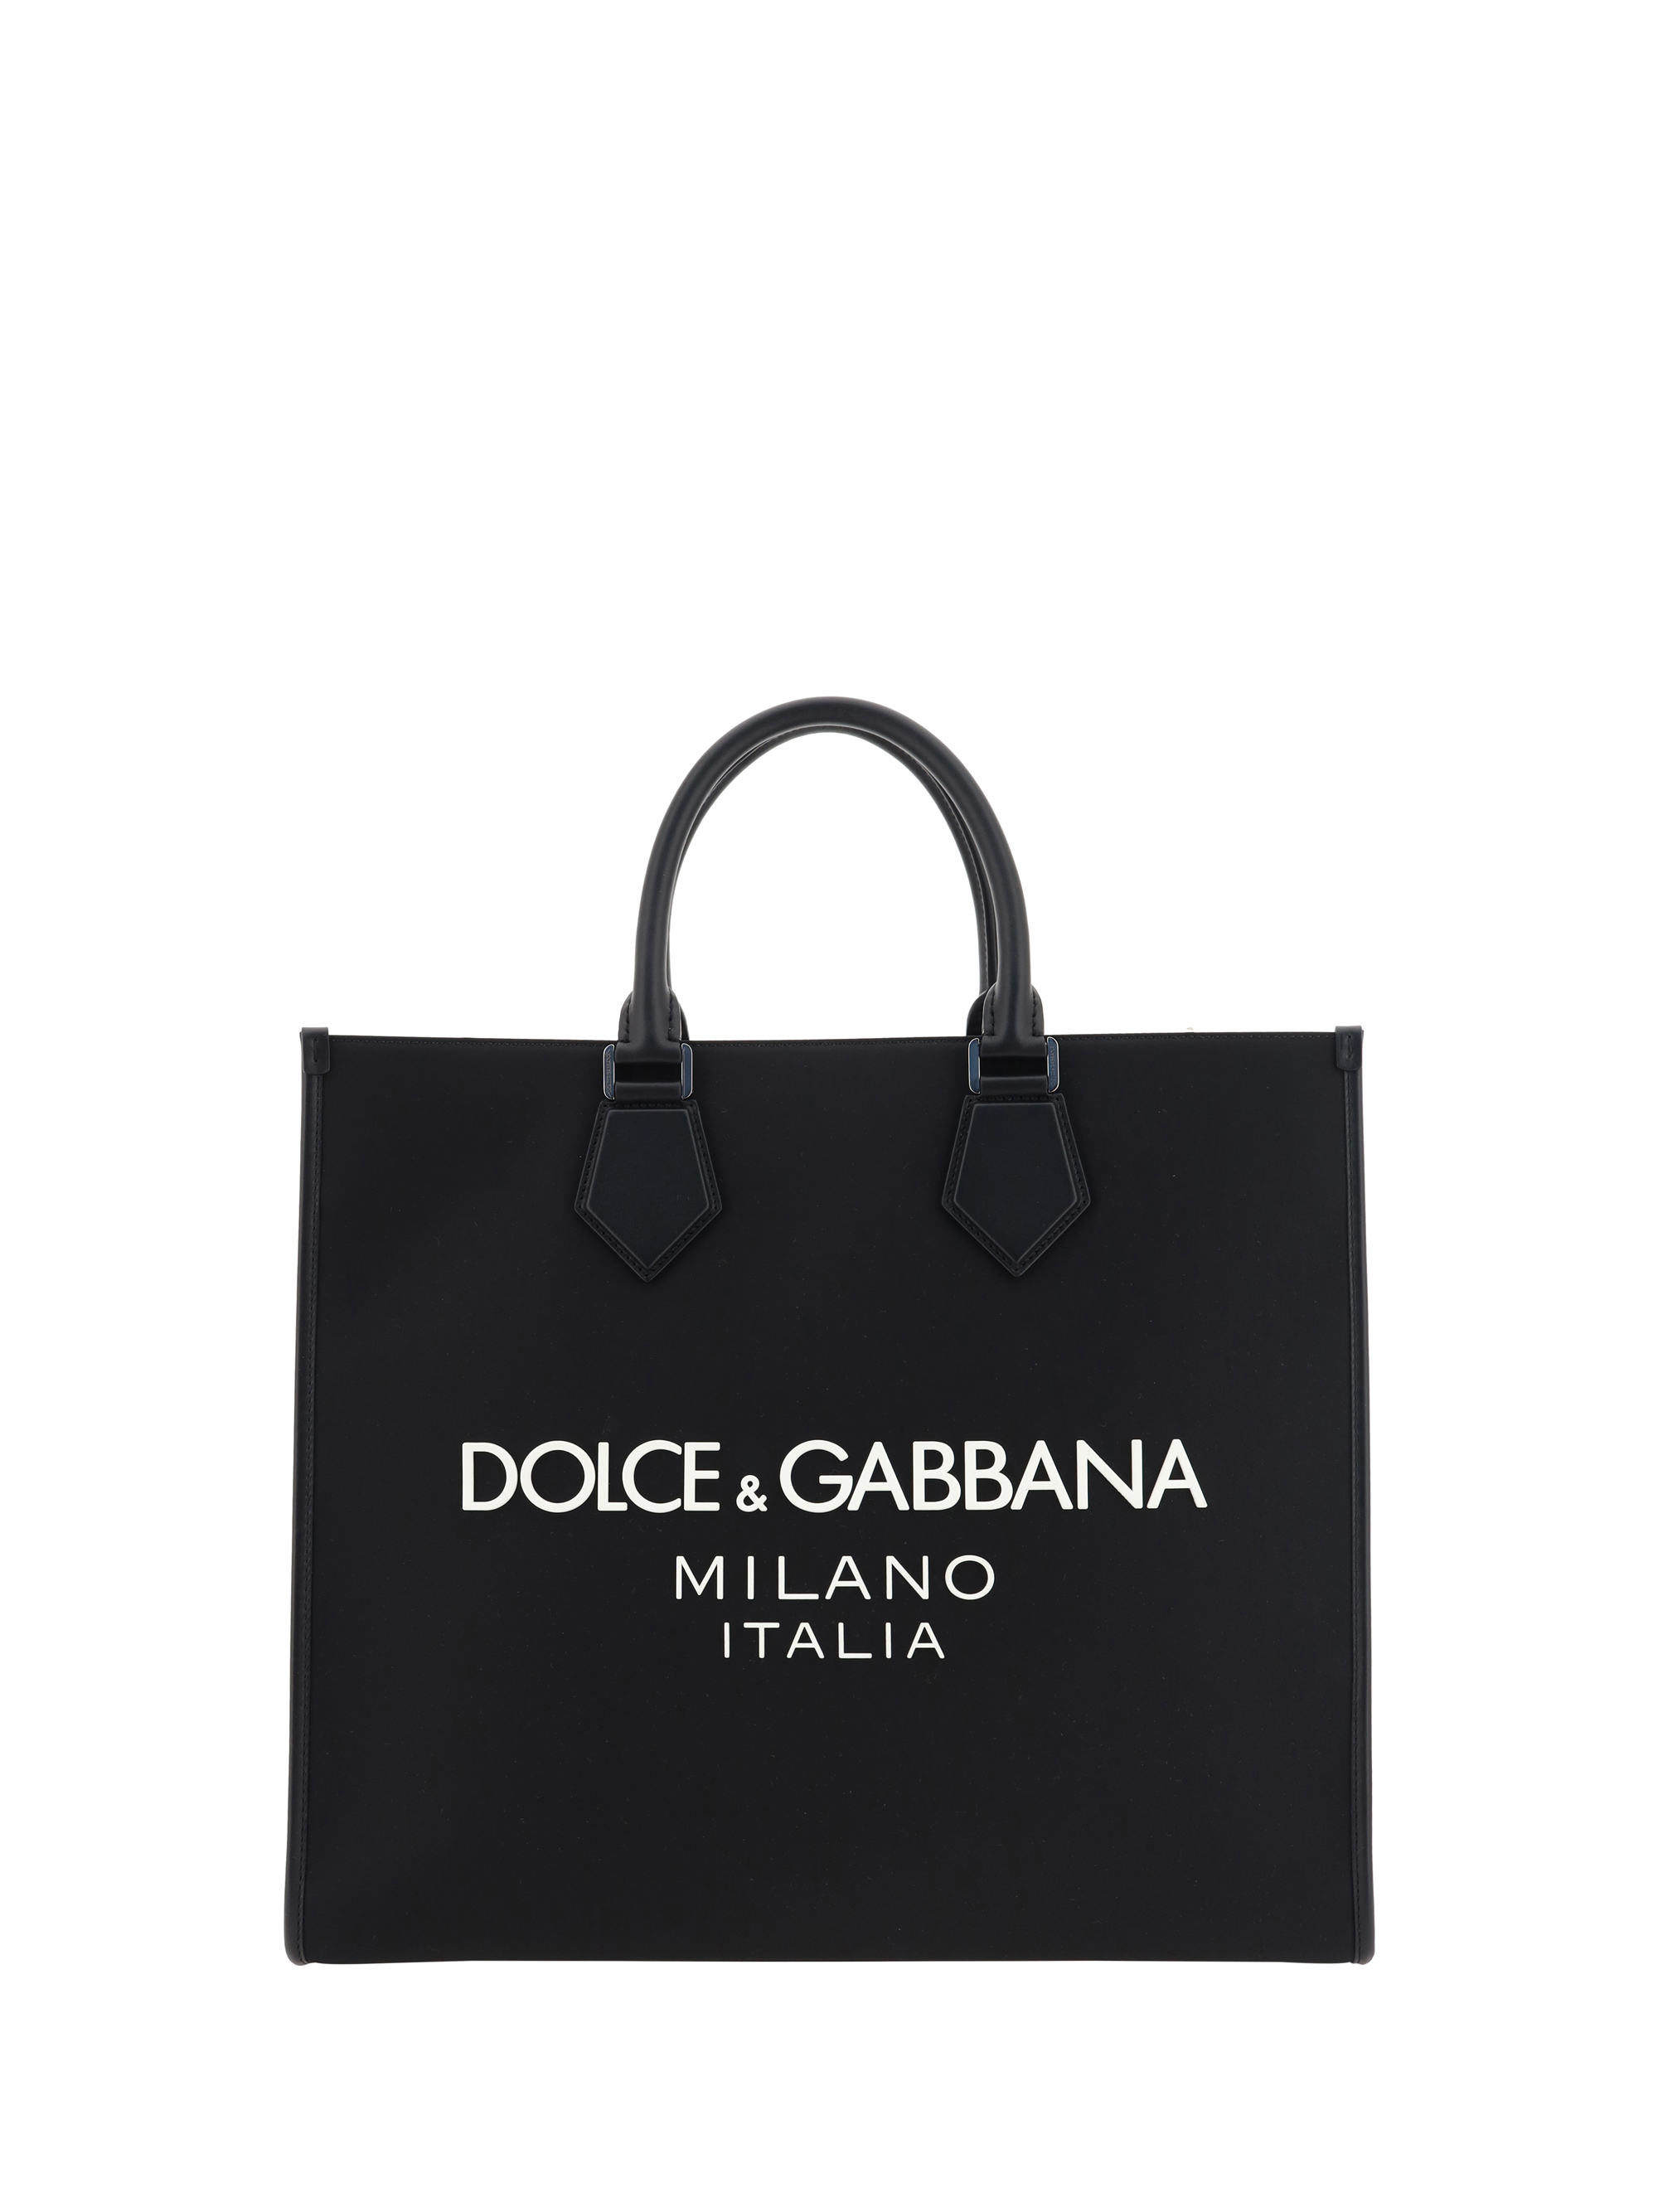 Dolce & Gabbana Logo Tote Bag In Nero/nero